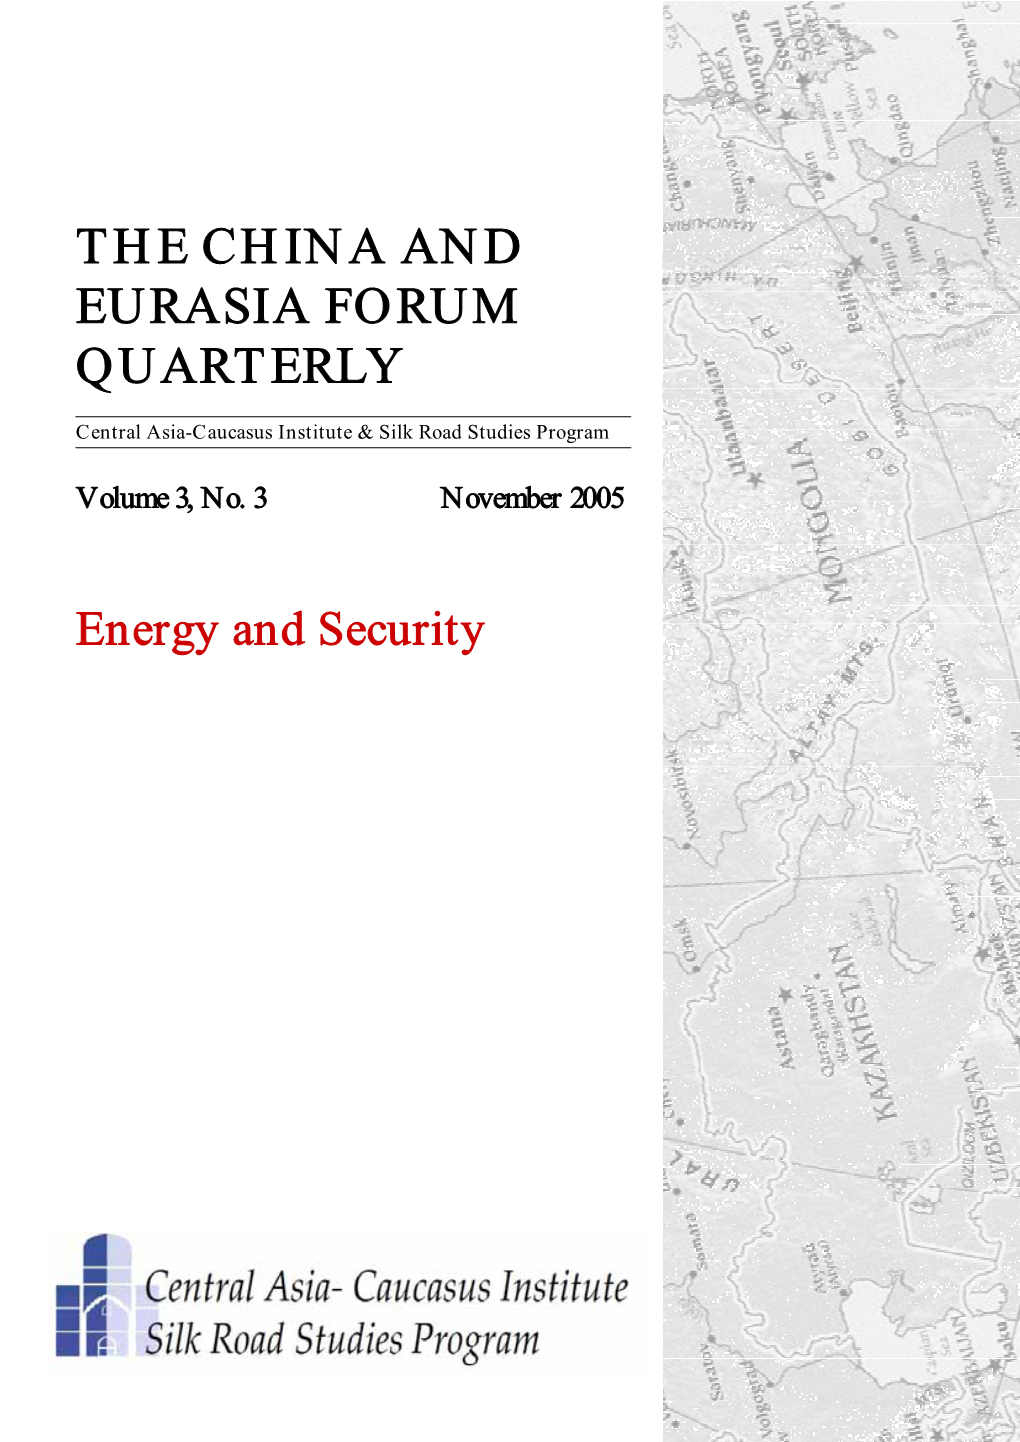 The China and Eurasia Forum Quarterly Vol 3, No 3